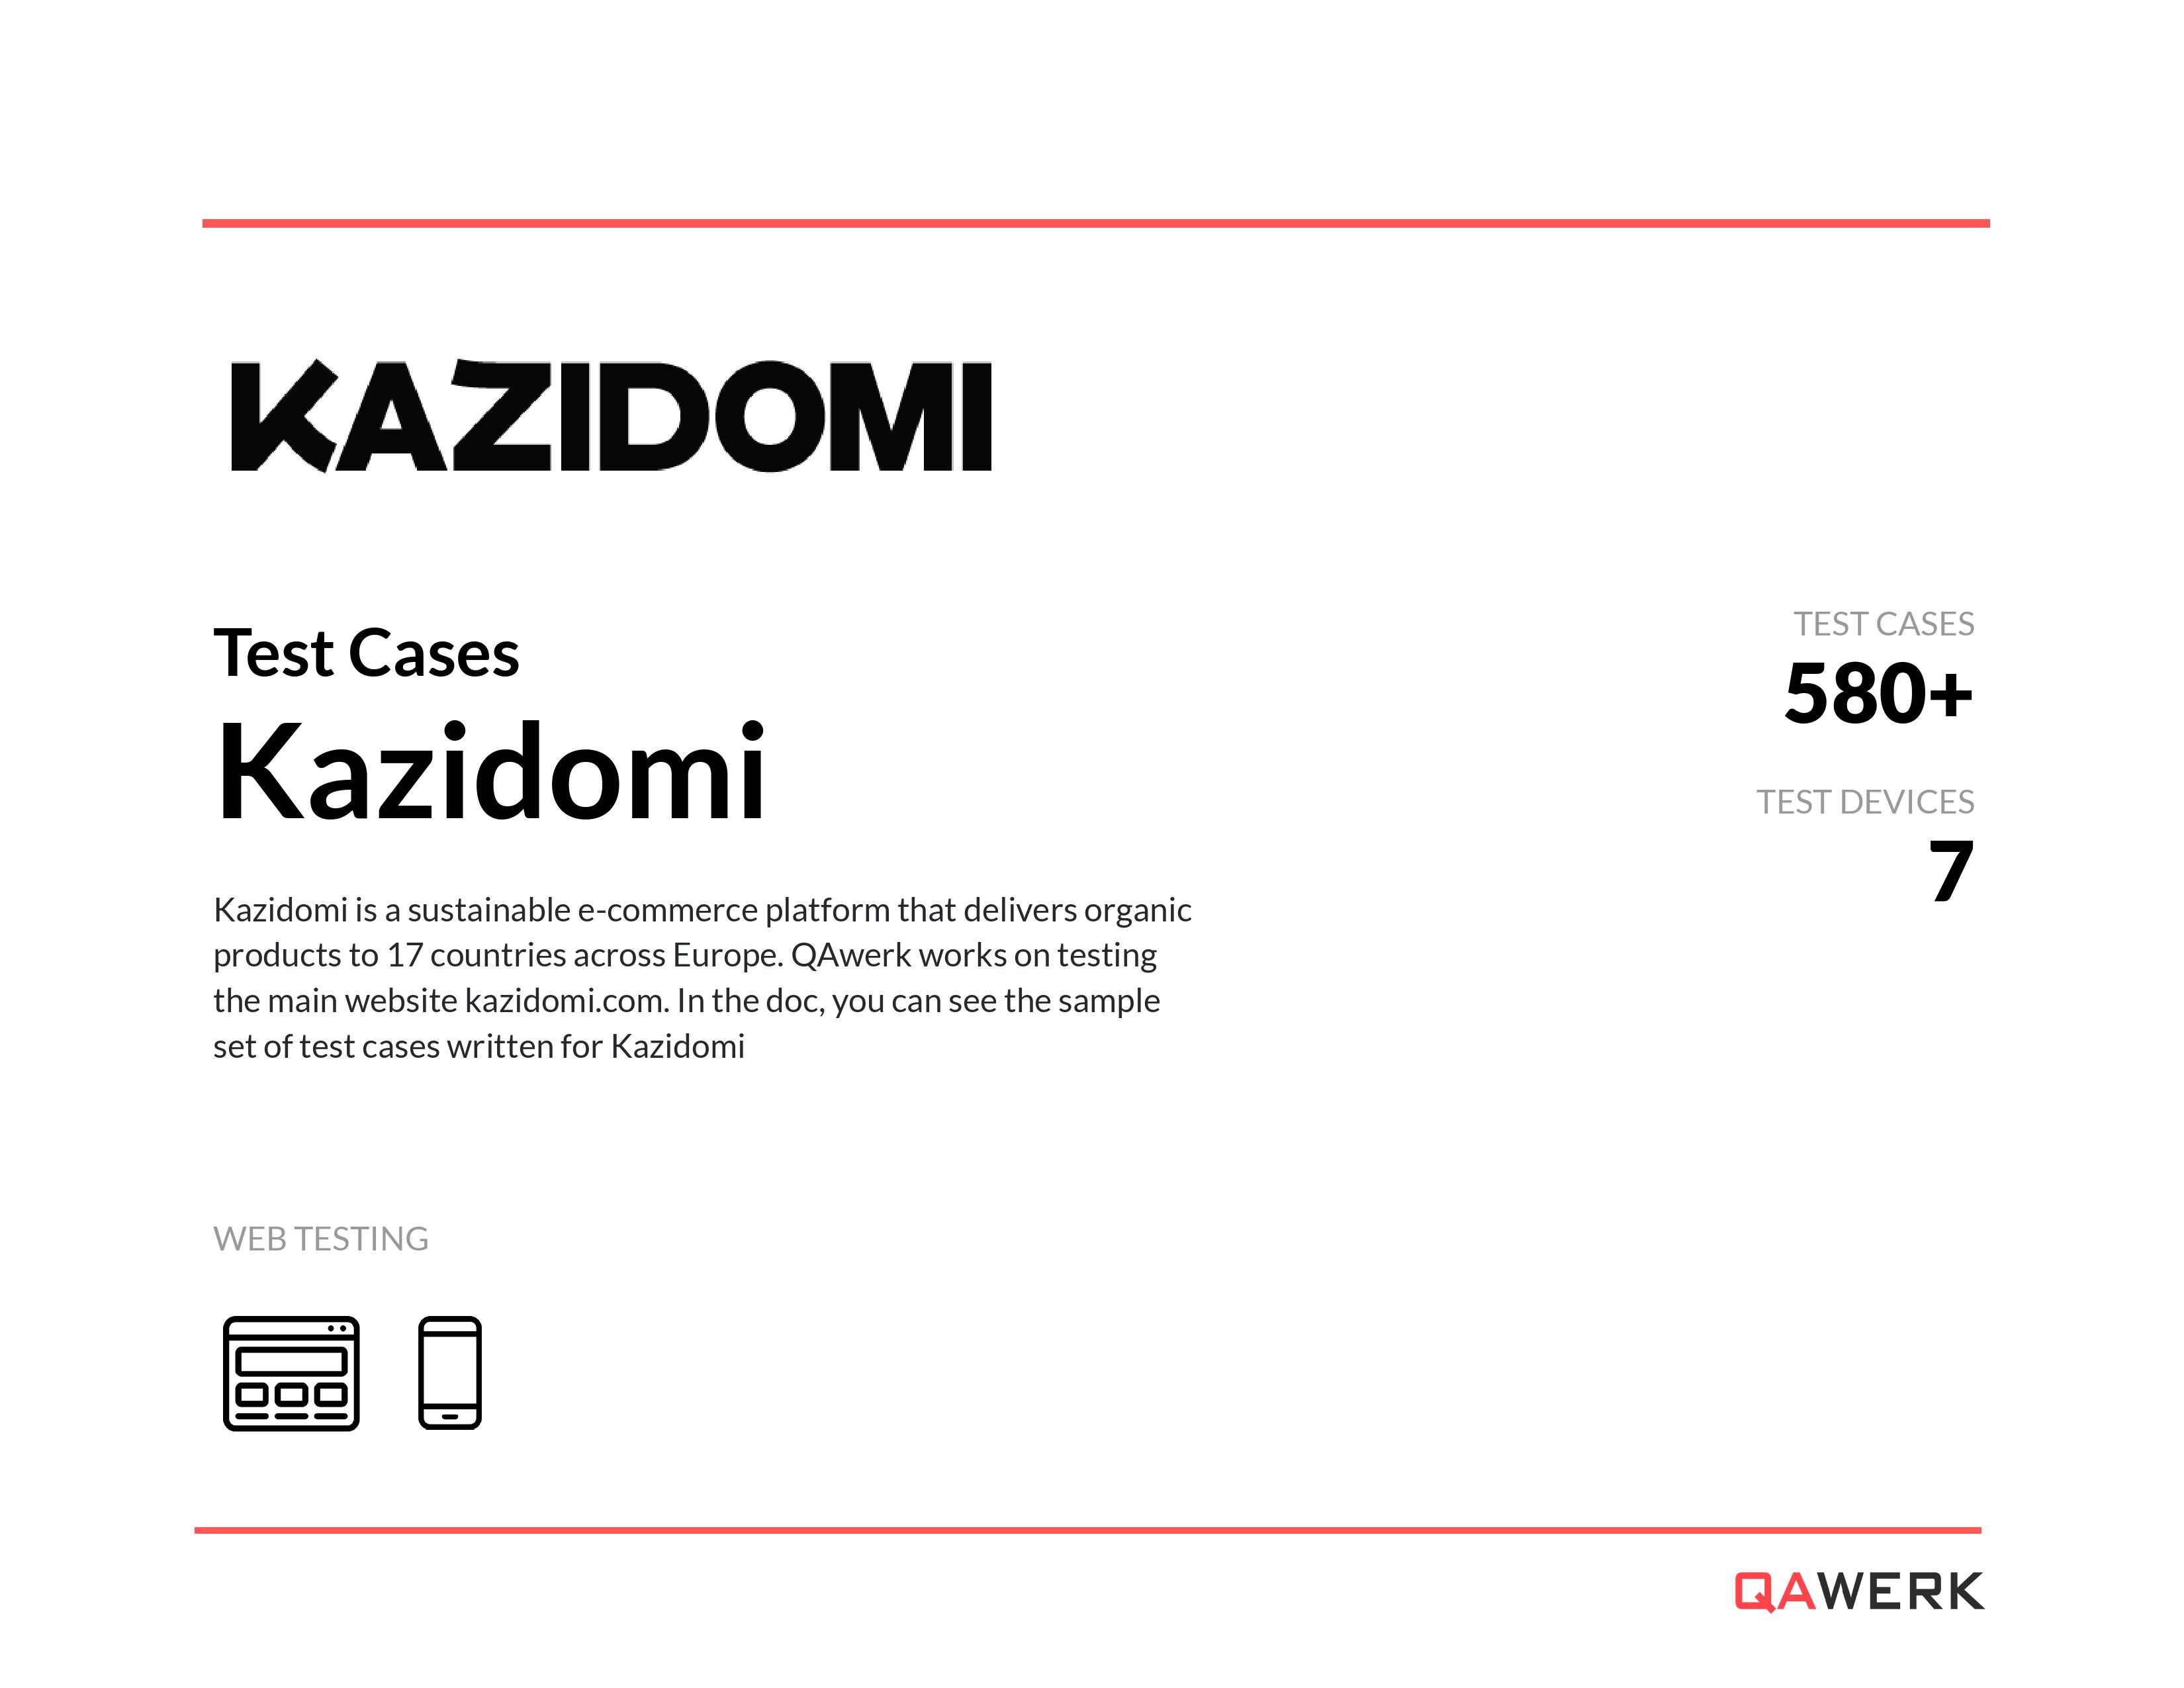 Kazidomi test cases